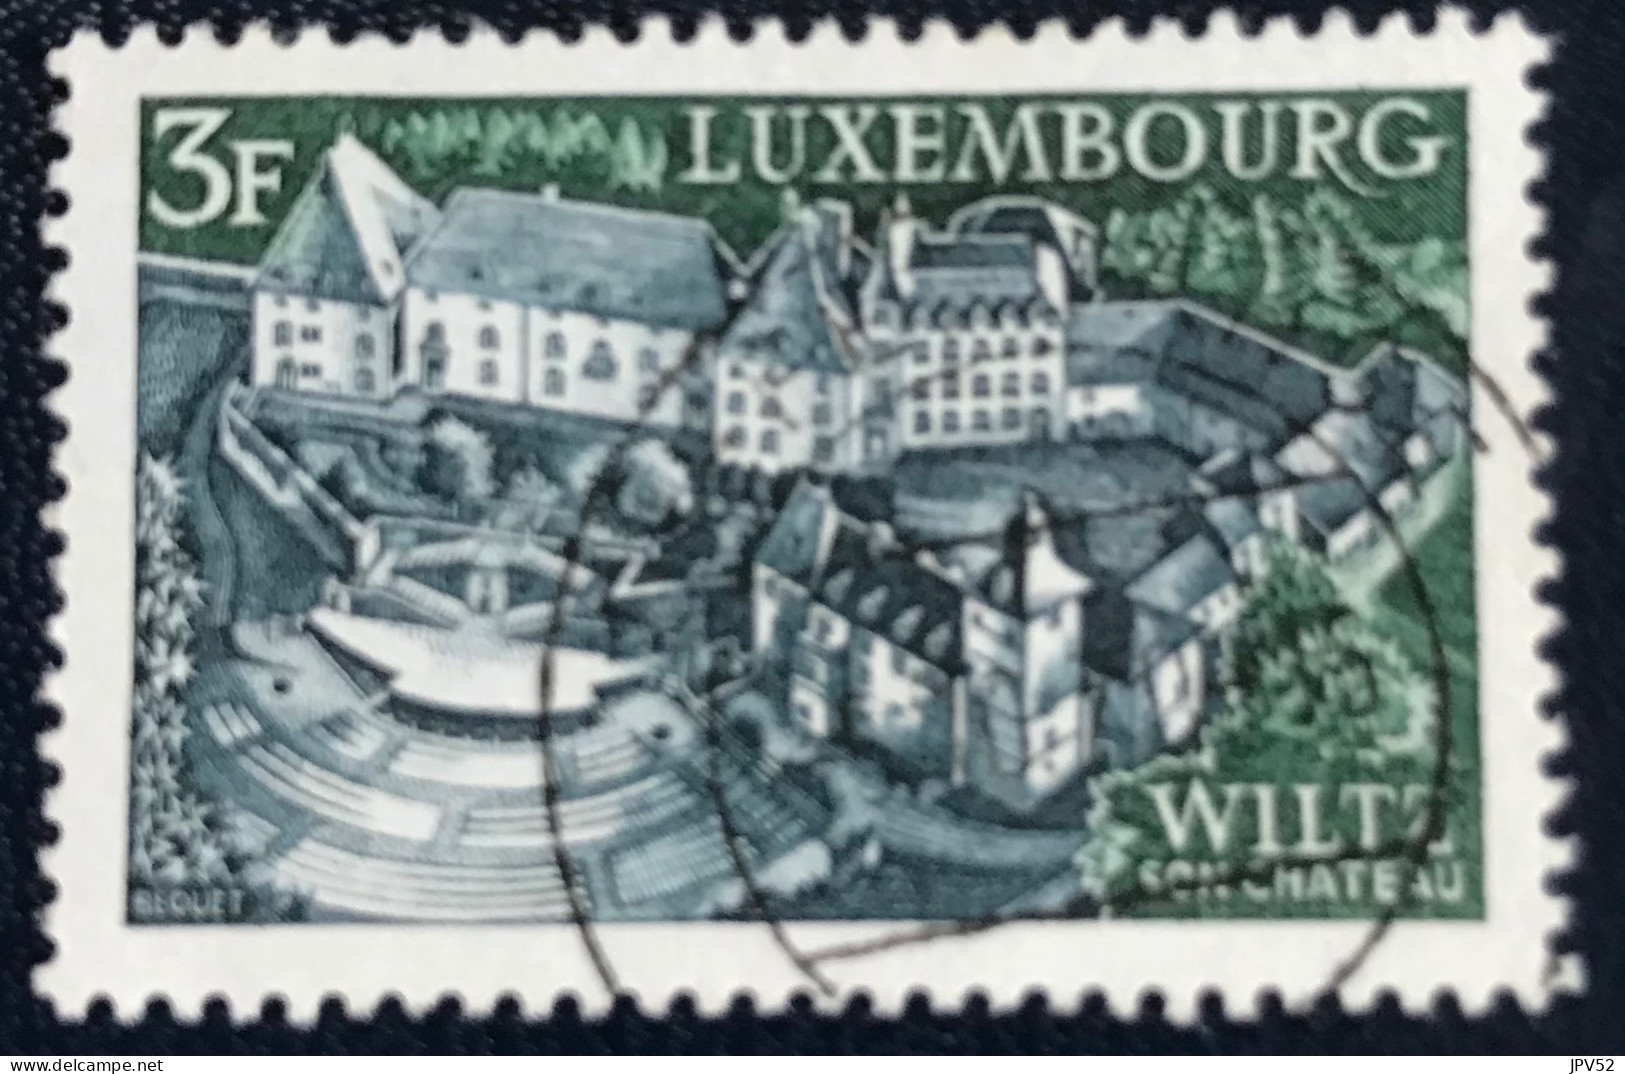 Luxembourg - Luxemburg - C18/33 - 1969 - (°)used - Michel 797 - Wiltz - Gebruikt